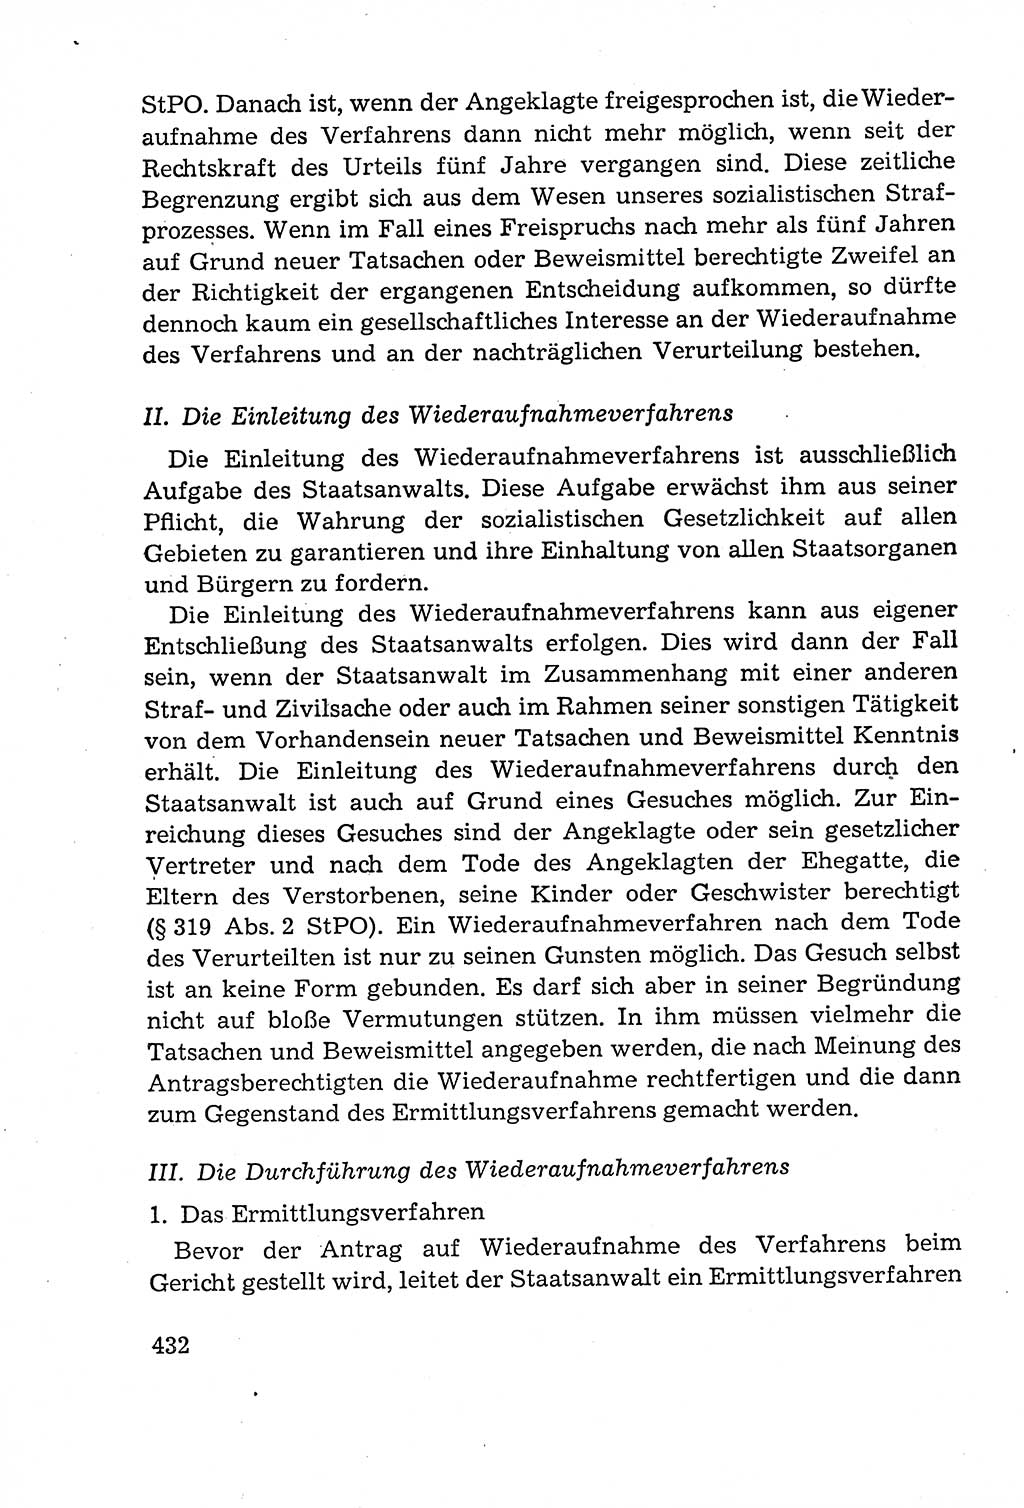 Leitfaden des Strafprozeßrechts der Deutschen Demokratischen Republik (DDR) 1959, Seite 432 (LF StPR DDR 1959, S. 432)